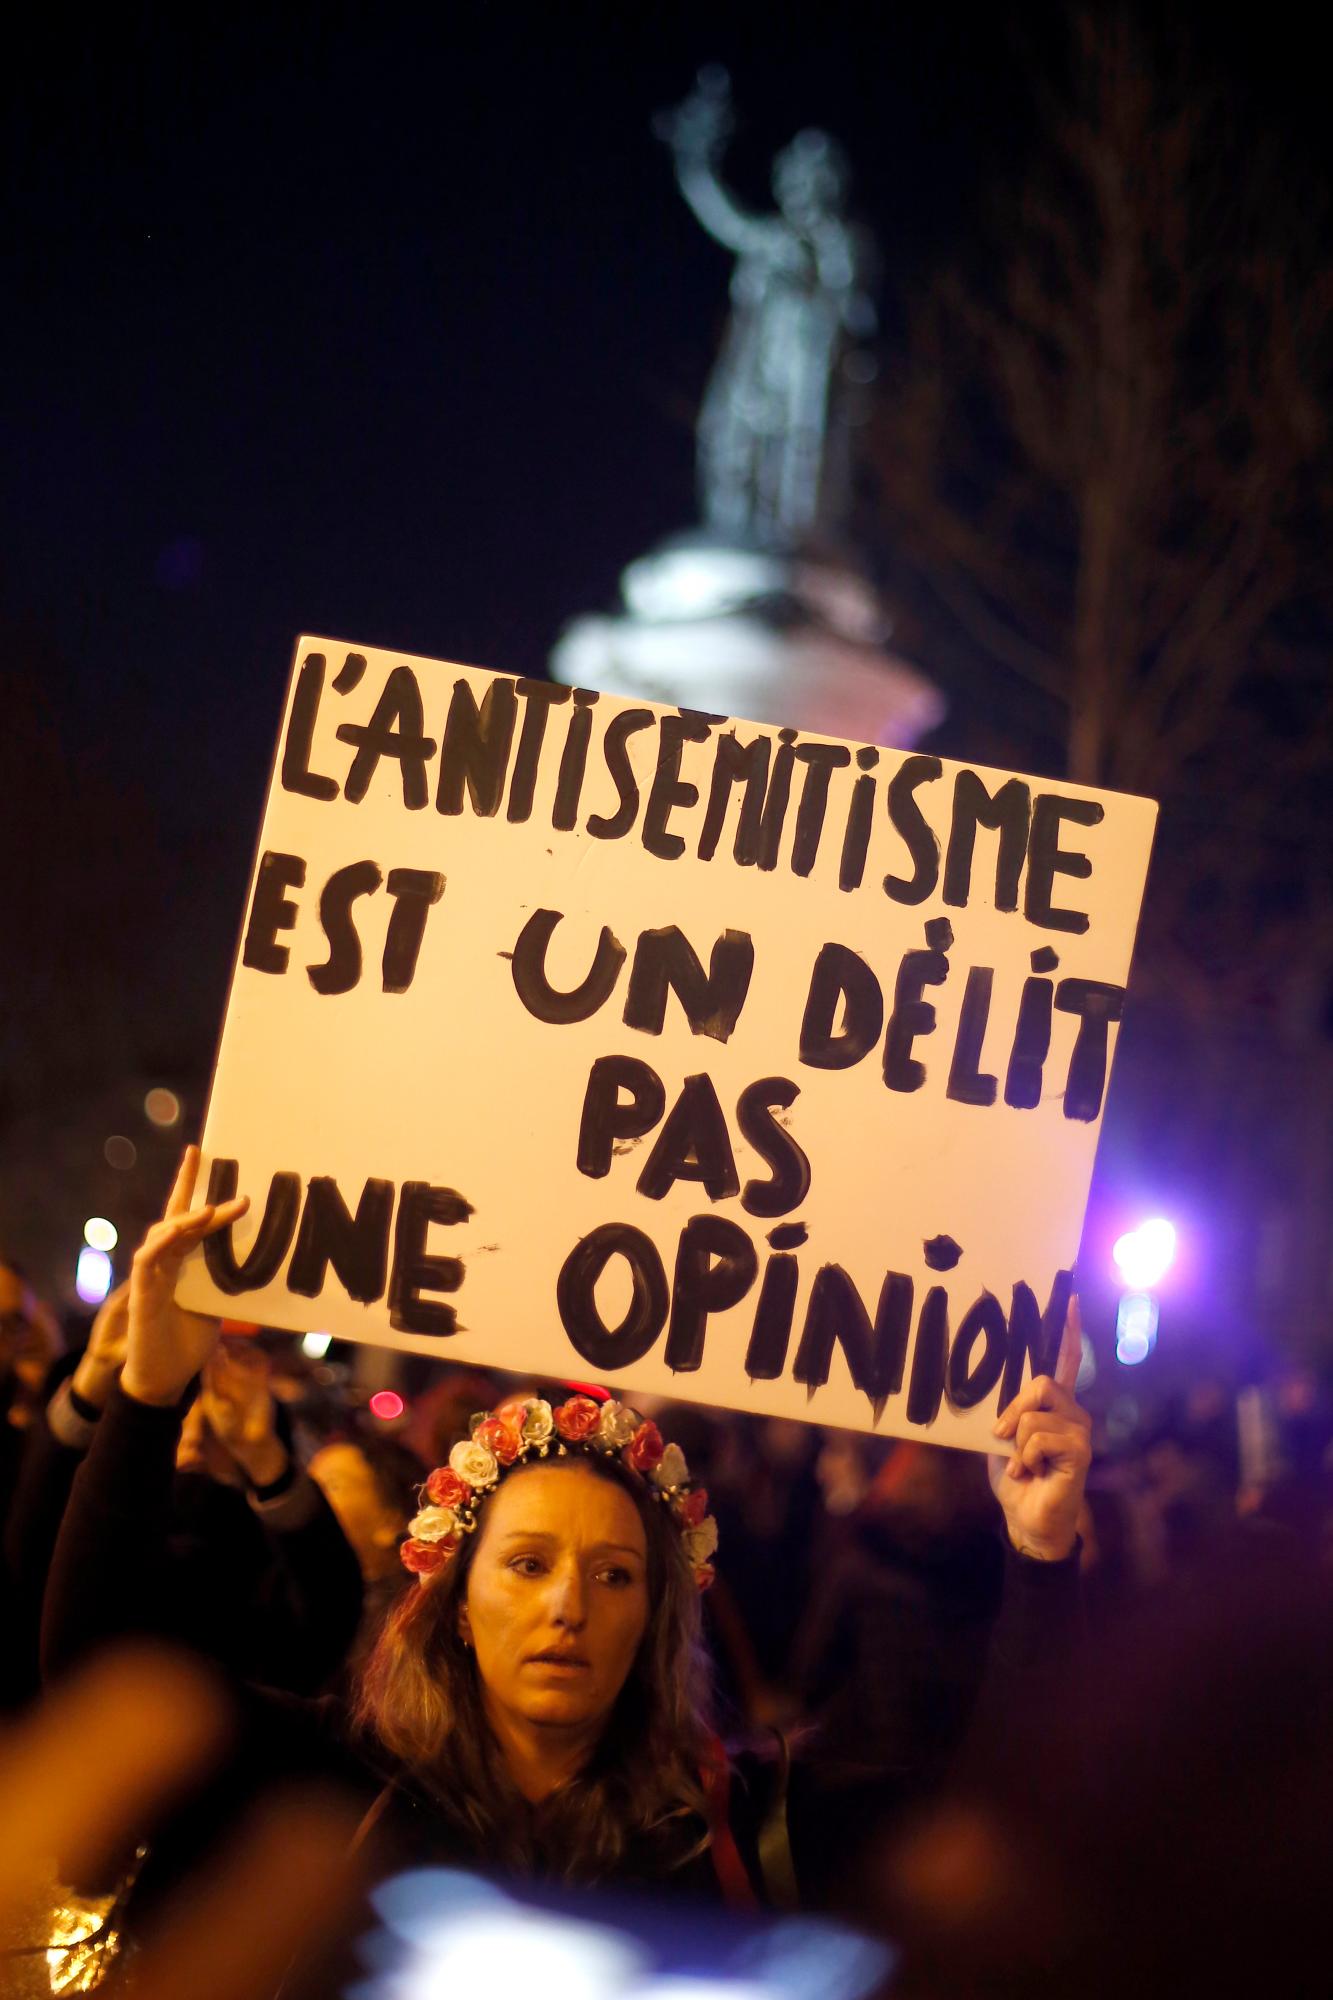 El cartel dice: El antisemitismo es un crimen, no una opinión. En París y en docenas de otras ciudades francesas, ciudadanos comunes y funcionarios de todo el espectro político se prepararon el martes para marchar y unirse contra el antisemitismo, luego de una serie de actos antisemitas que conmocionaron a la nación.